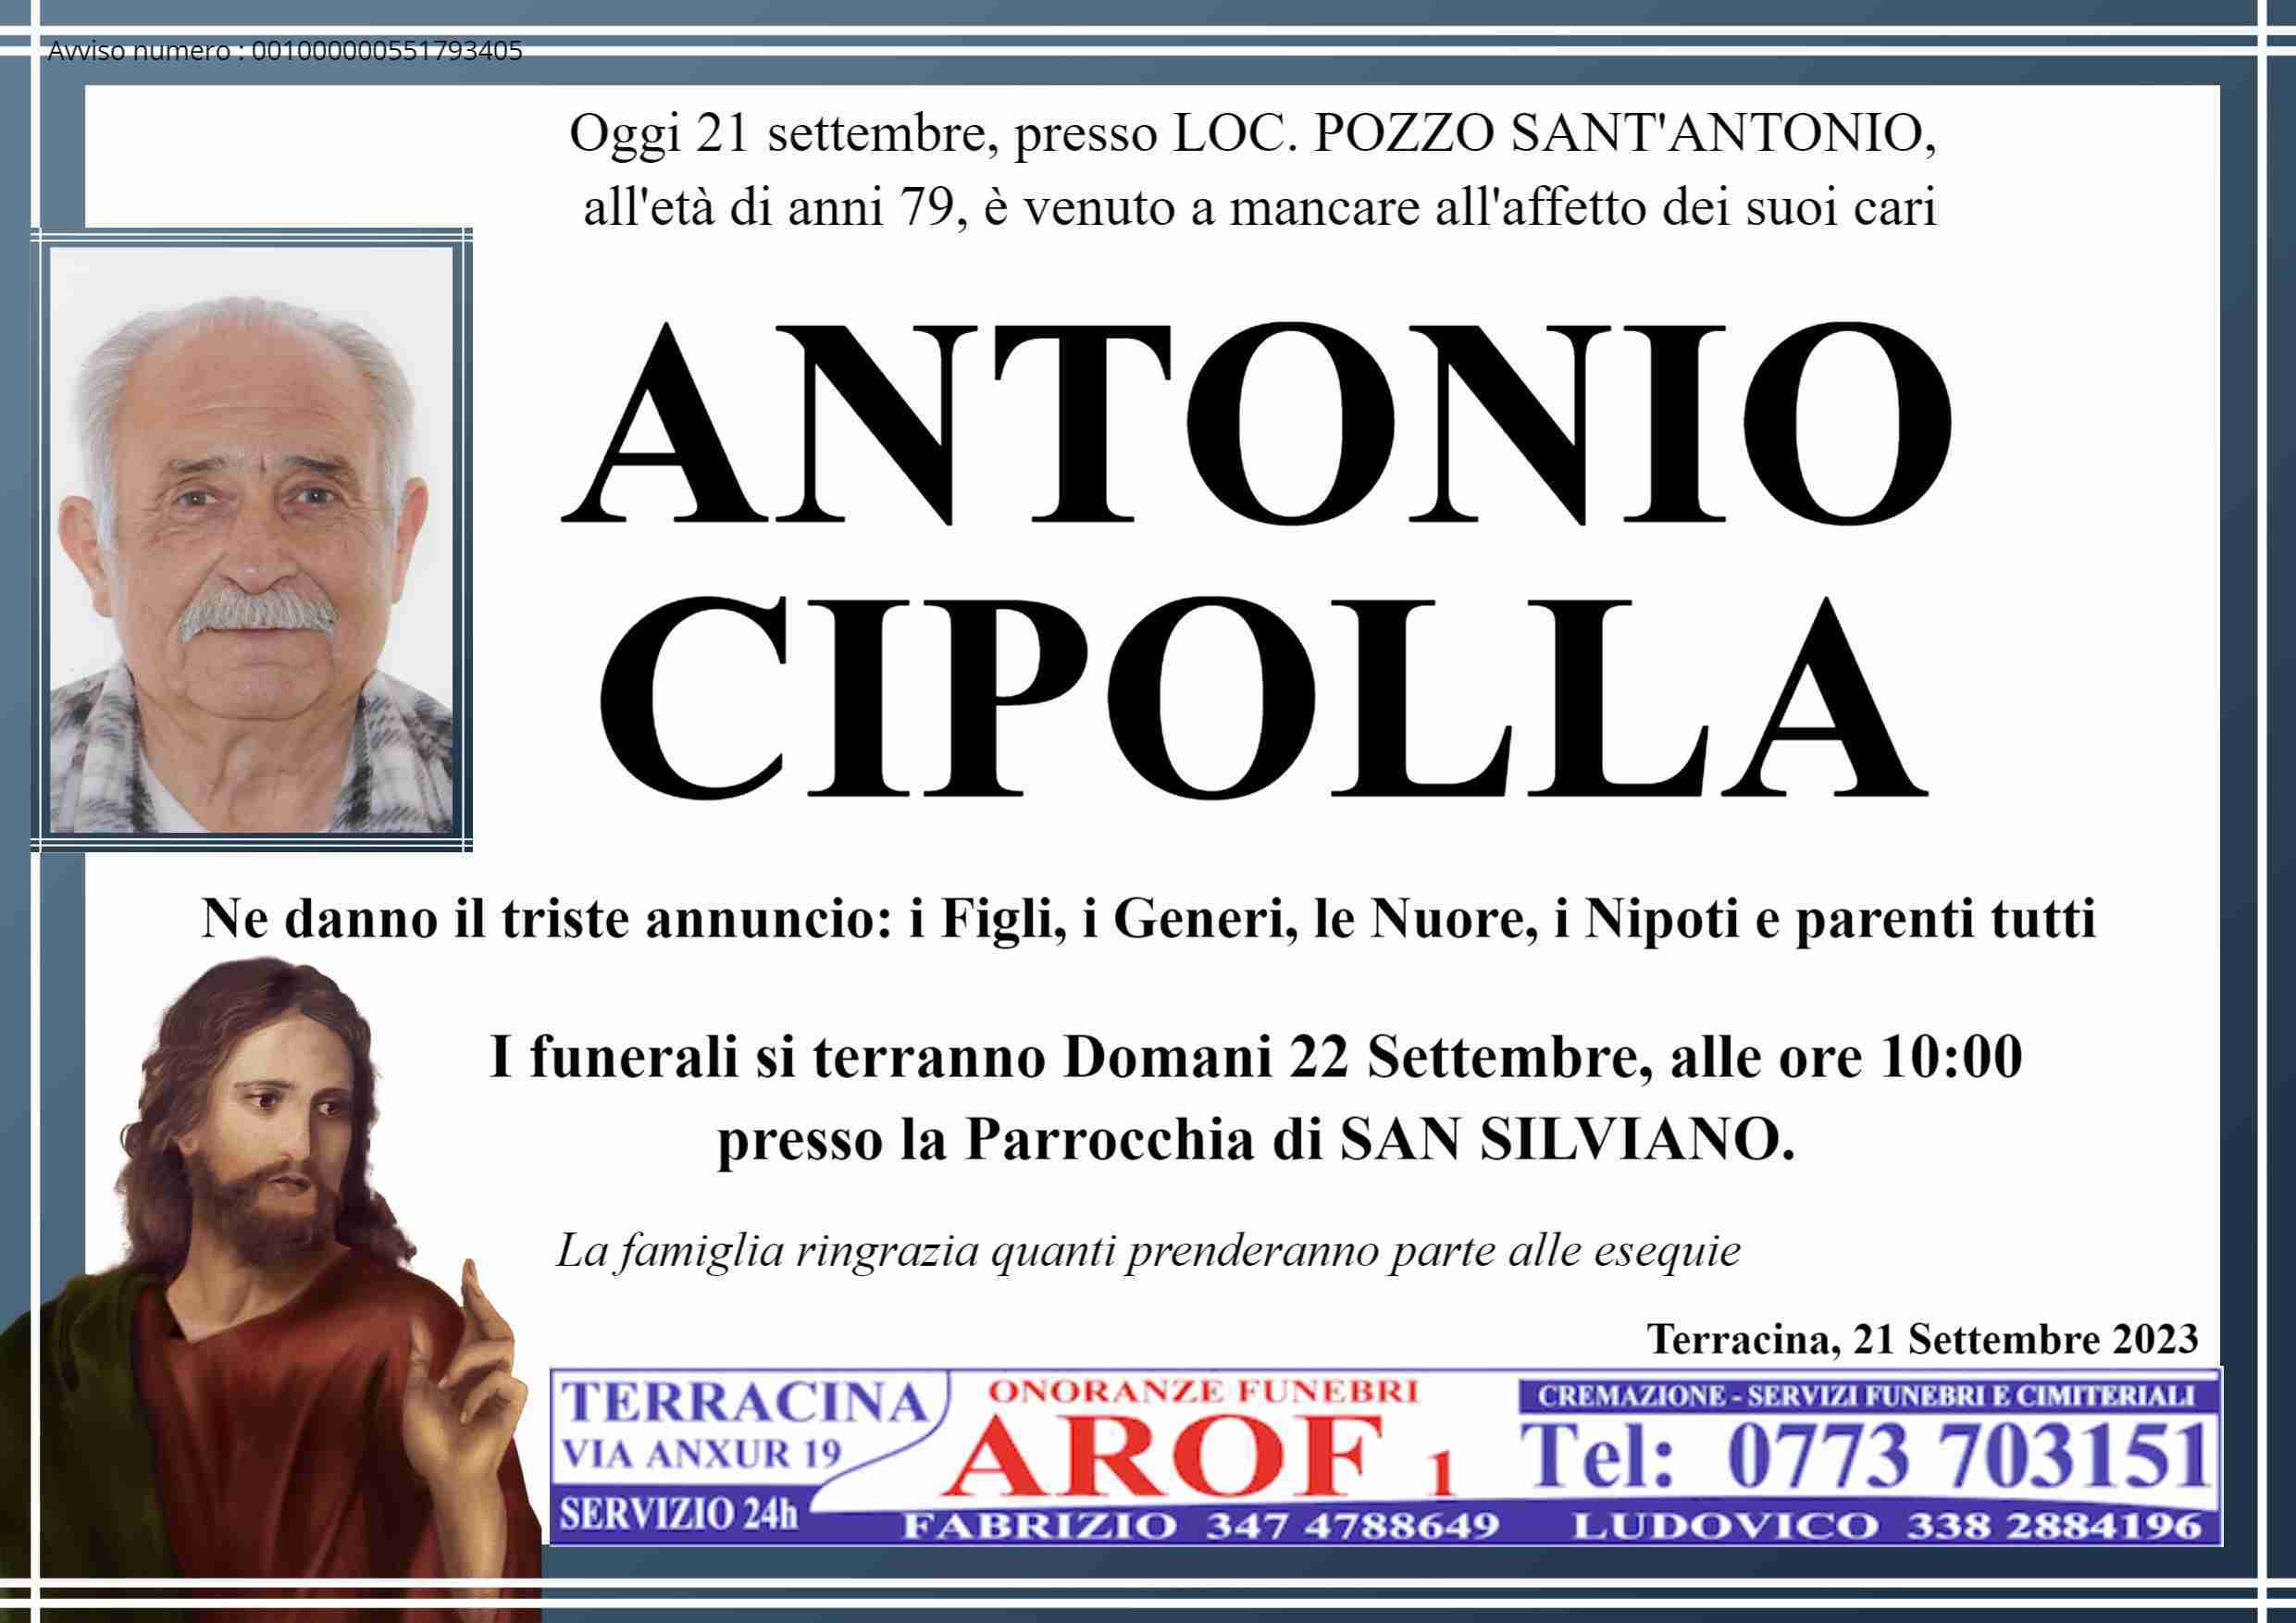 Antonio Cipolla